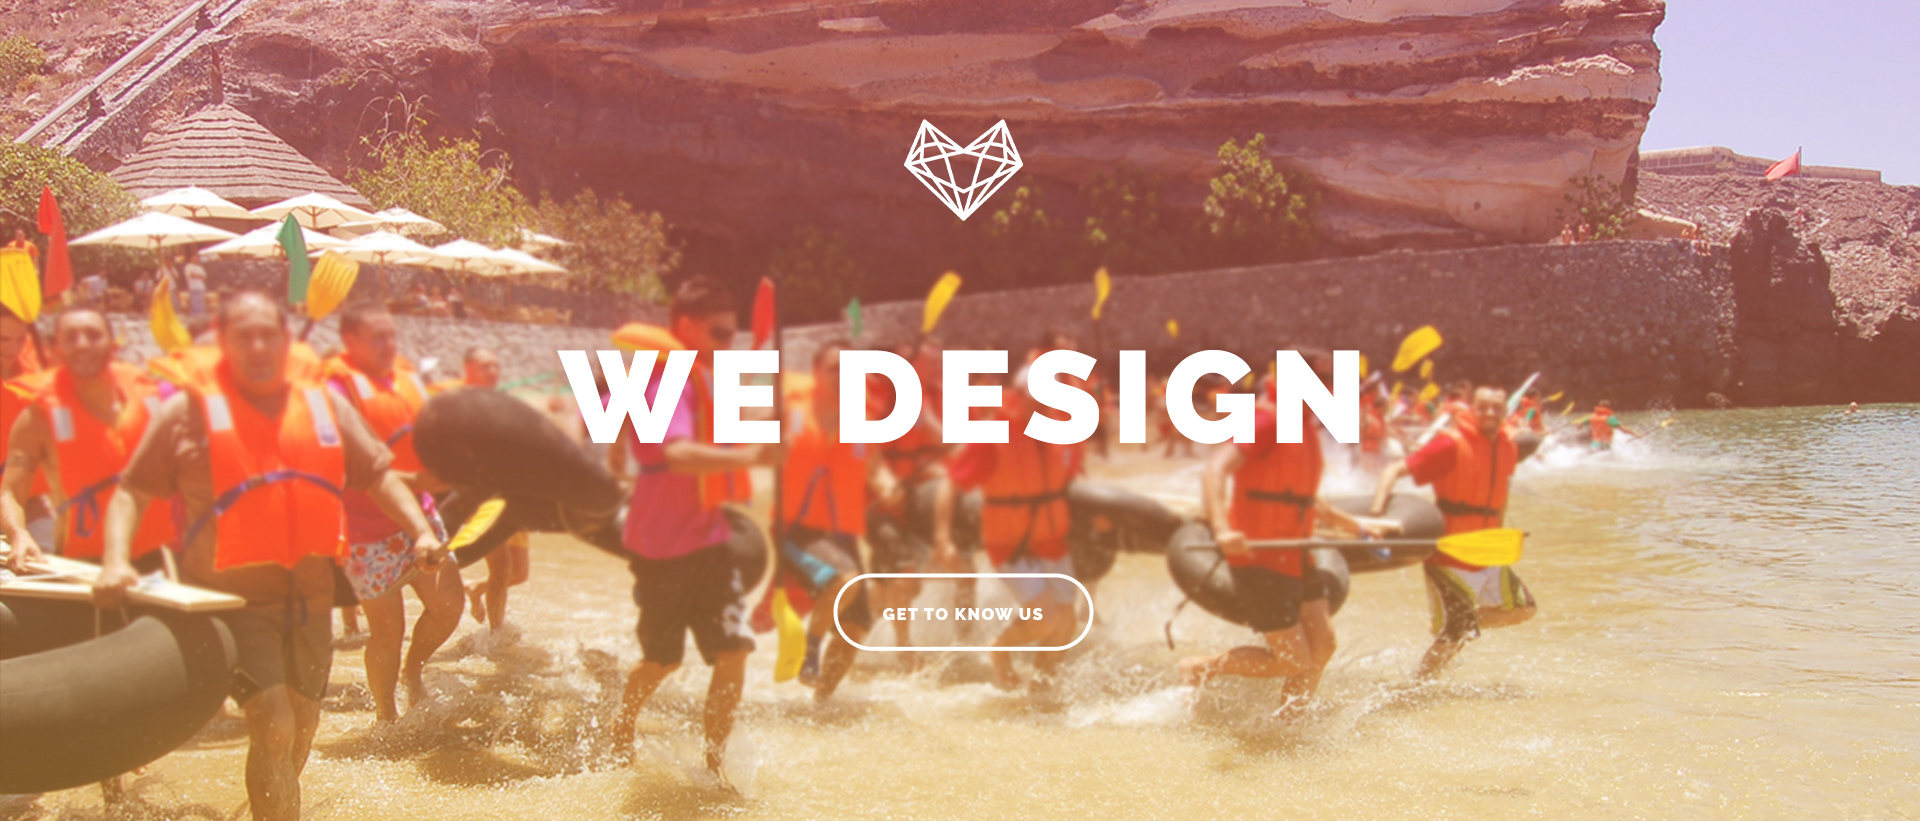 We design